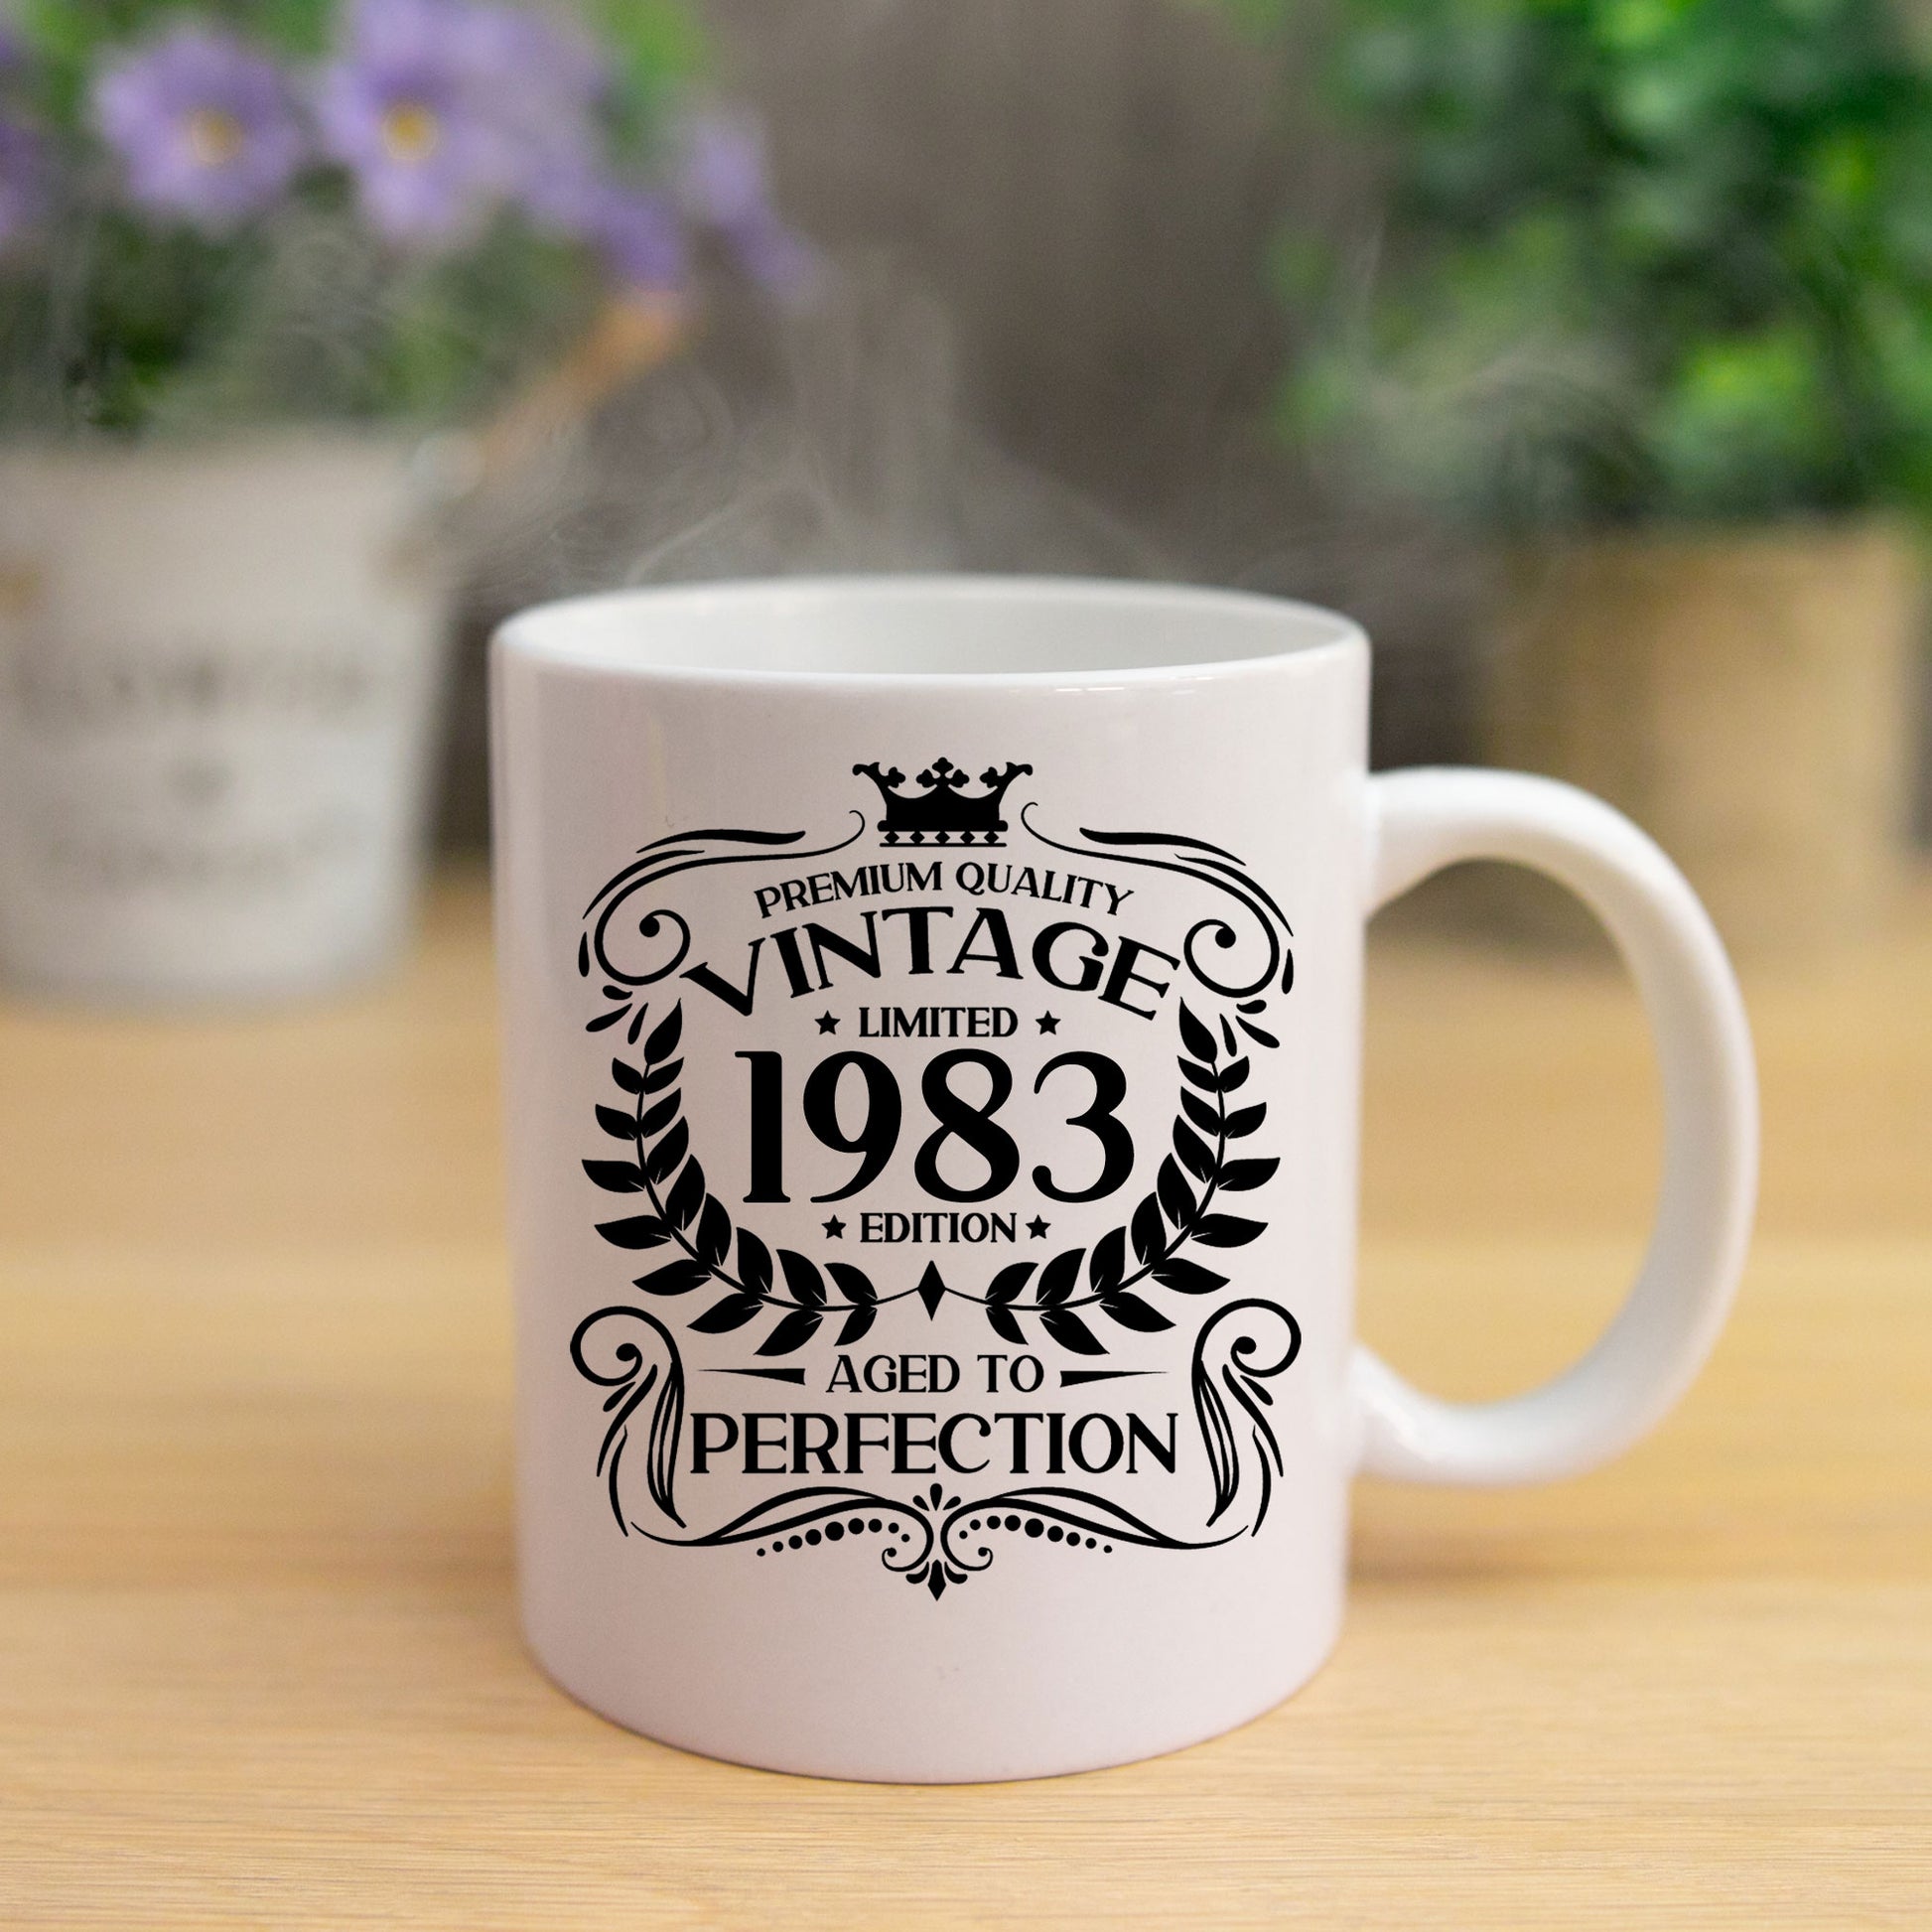 Personalised Vintage 1983 Mug and/or Coaster  - Always Looking Good -   